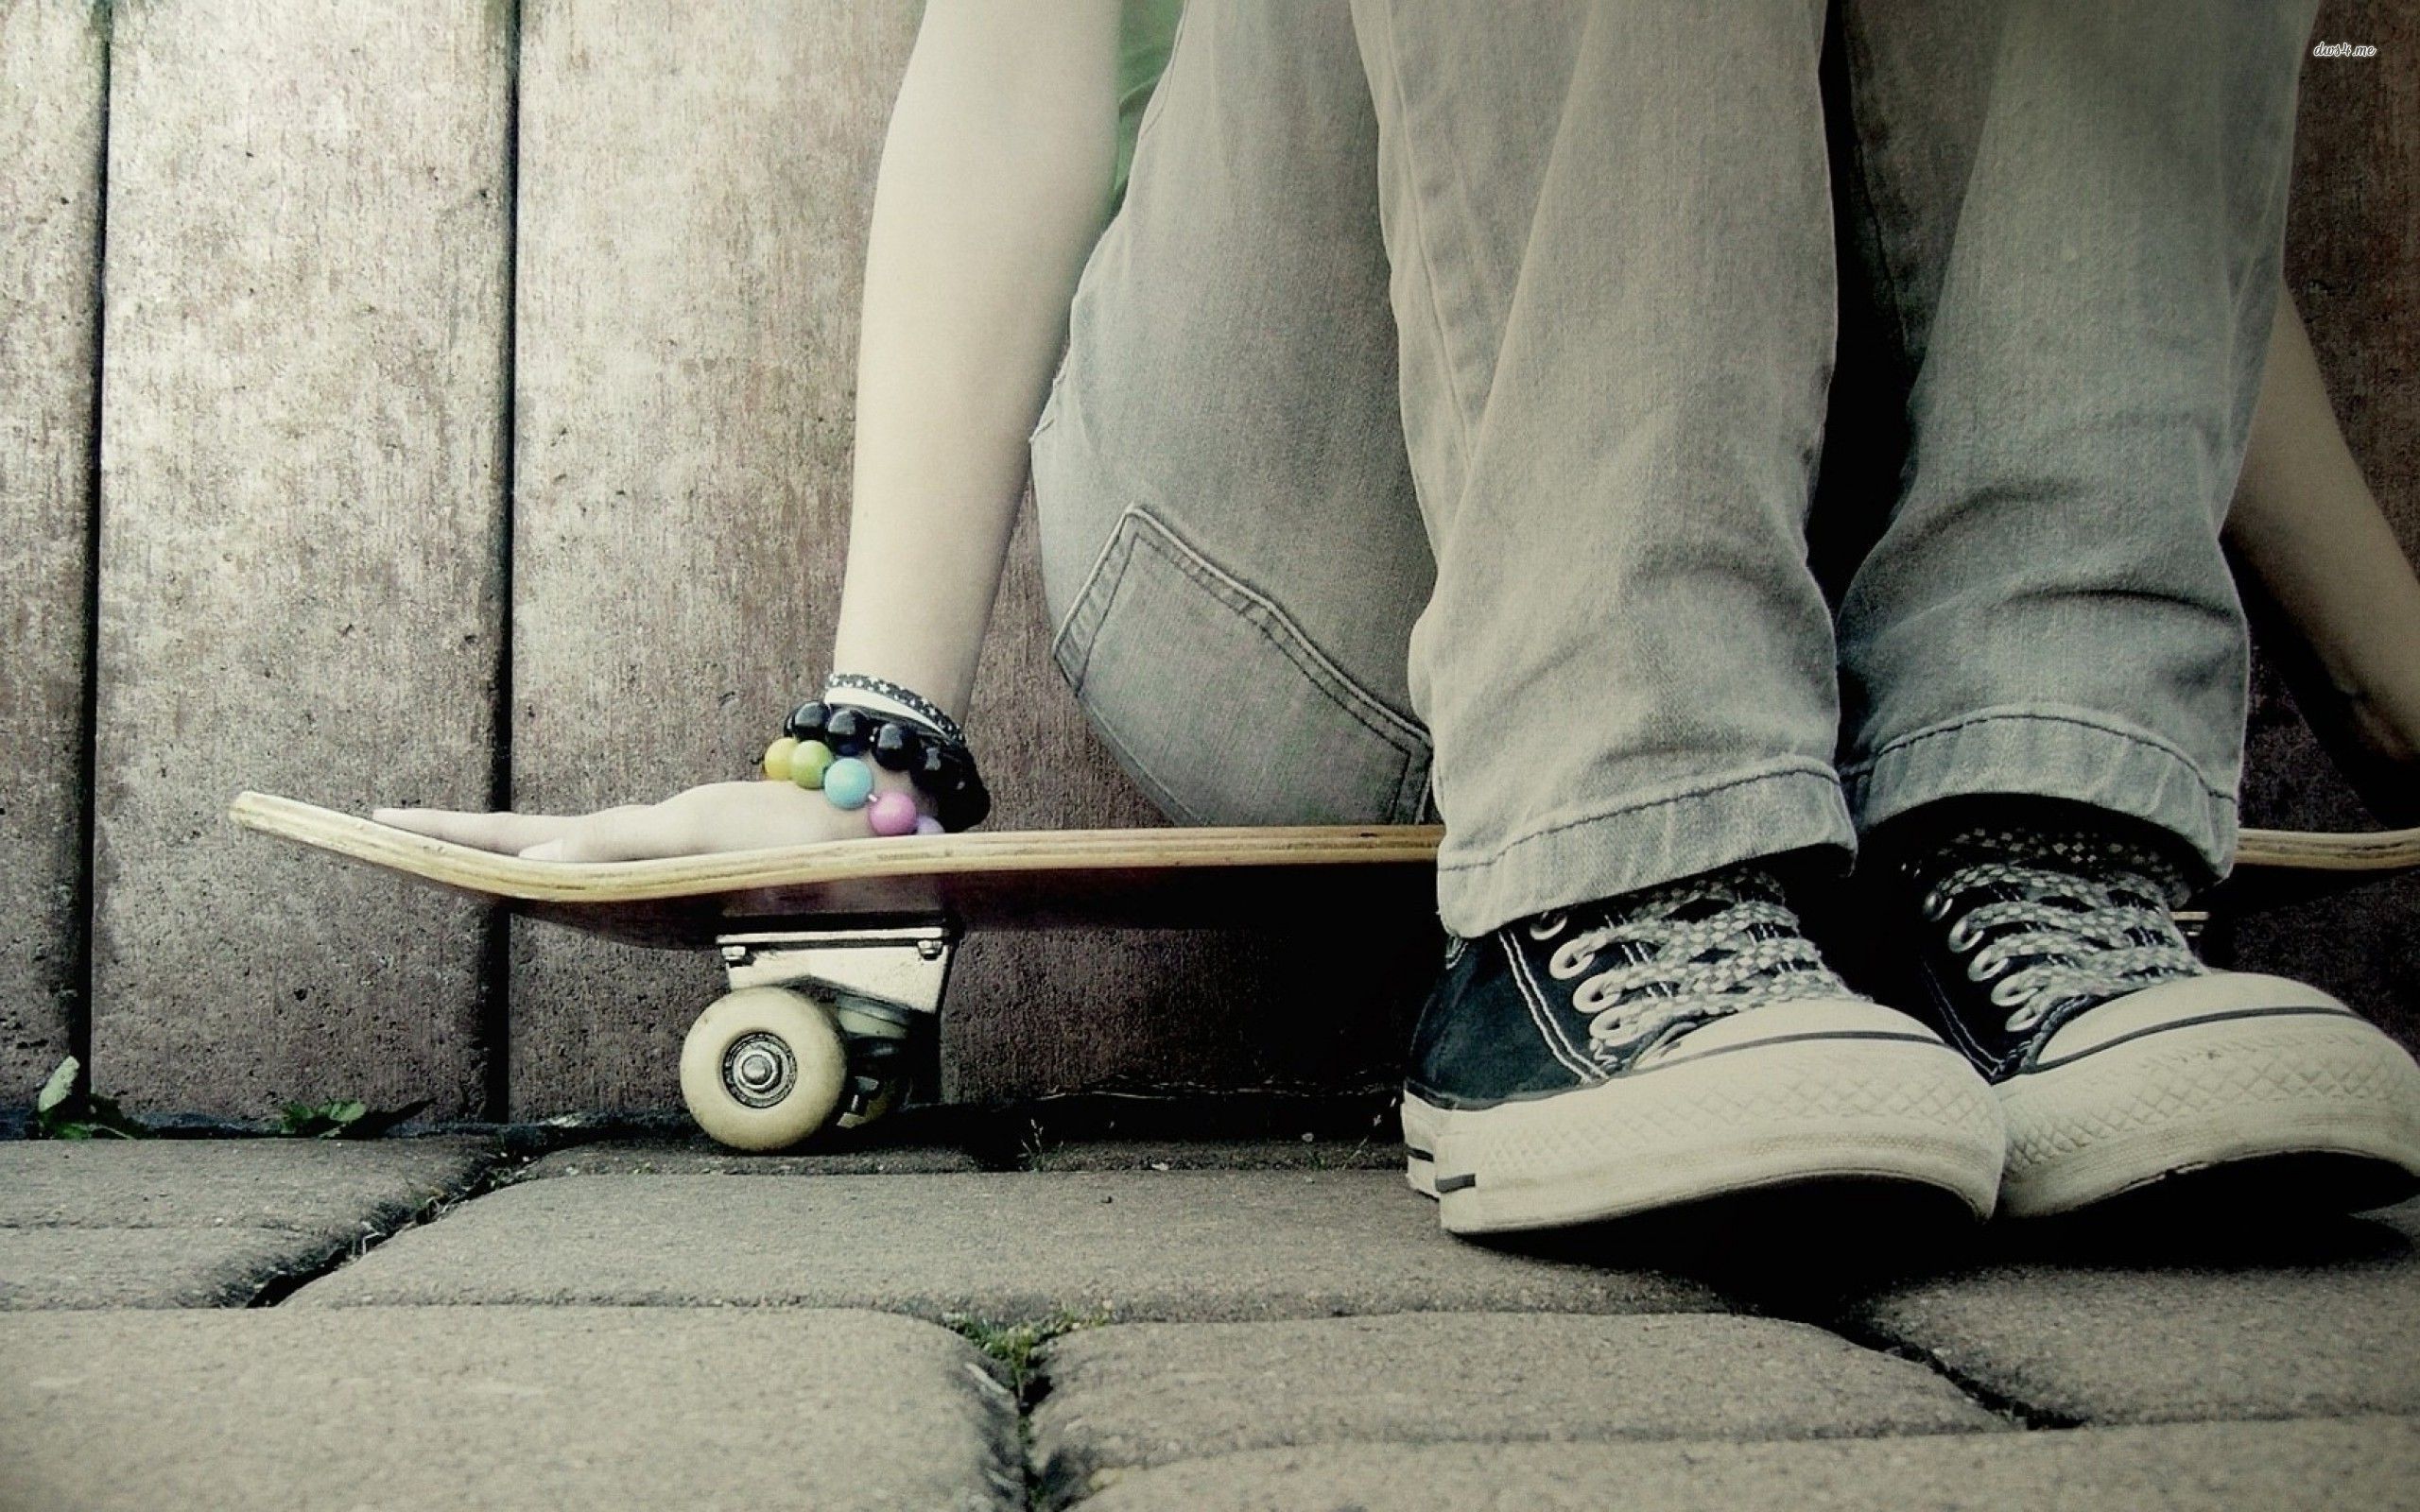 skateboarding tumblr backgrounds